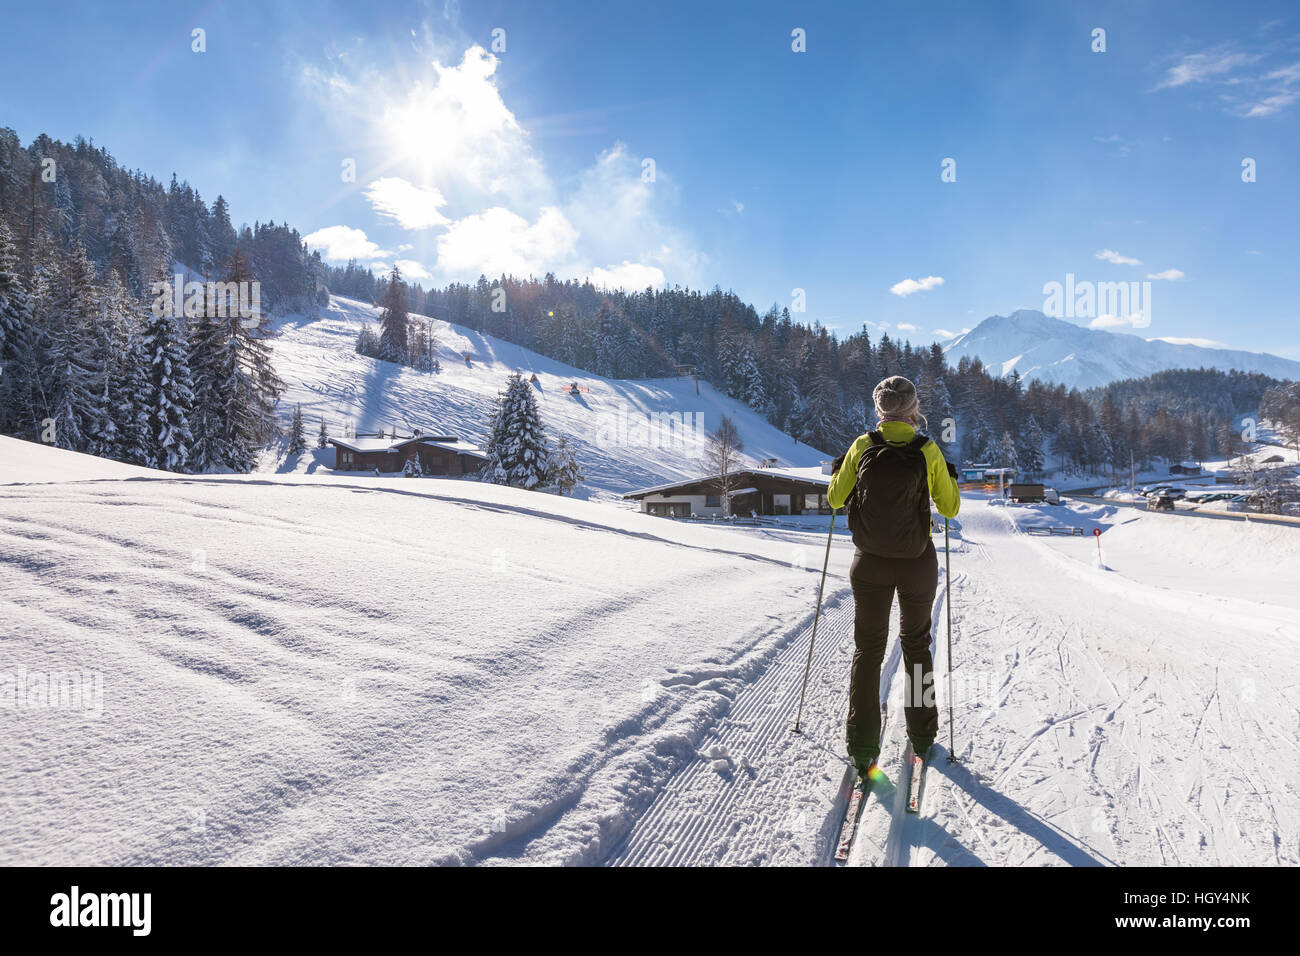 Femme faisant du ski de fond sur piste dans la neige paysage d'hiver avec du beau temps et de belles montagnes en arrière-plan Banque D'Images